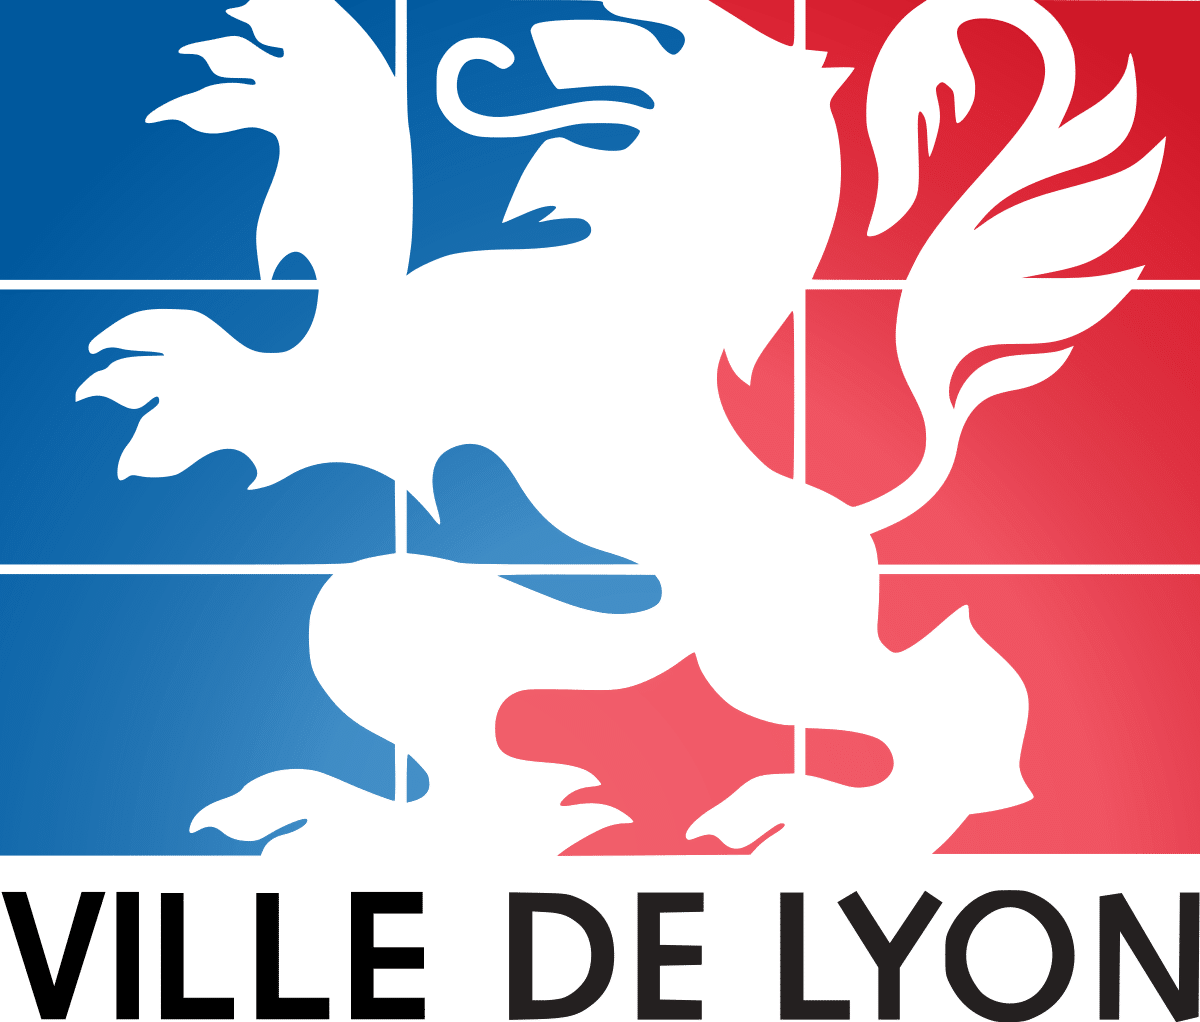 Logo Ville de Lyon